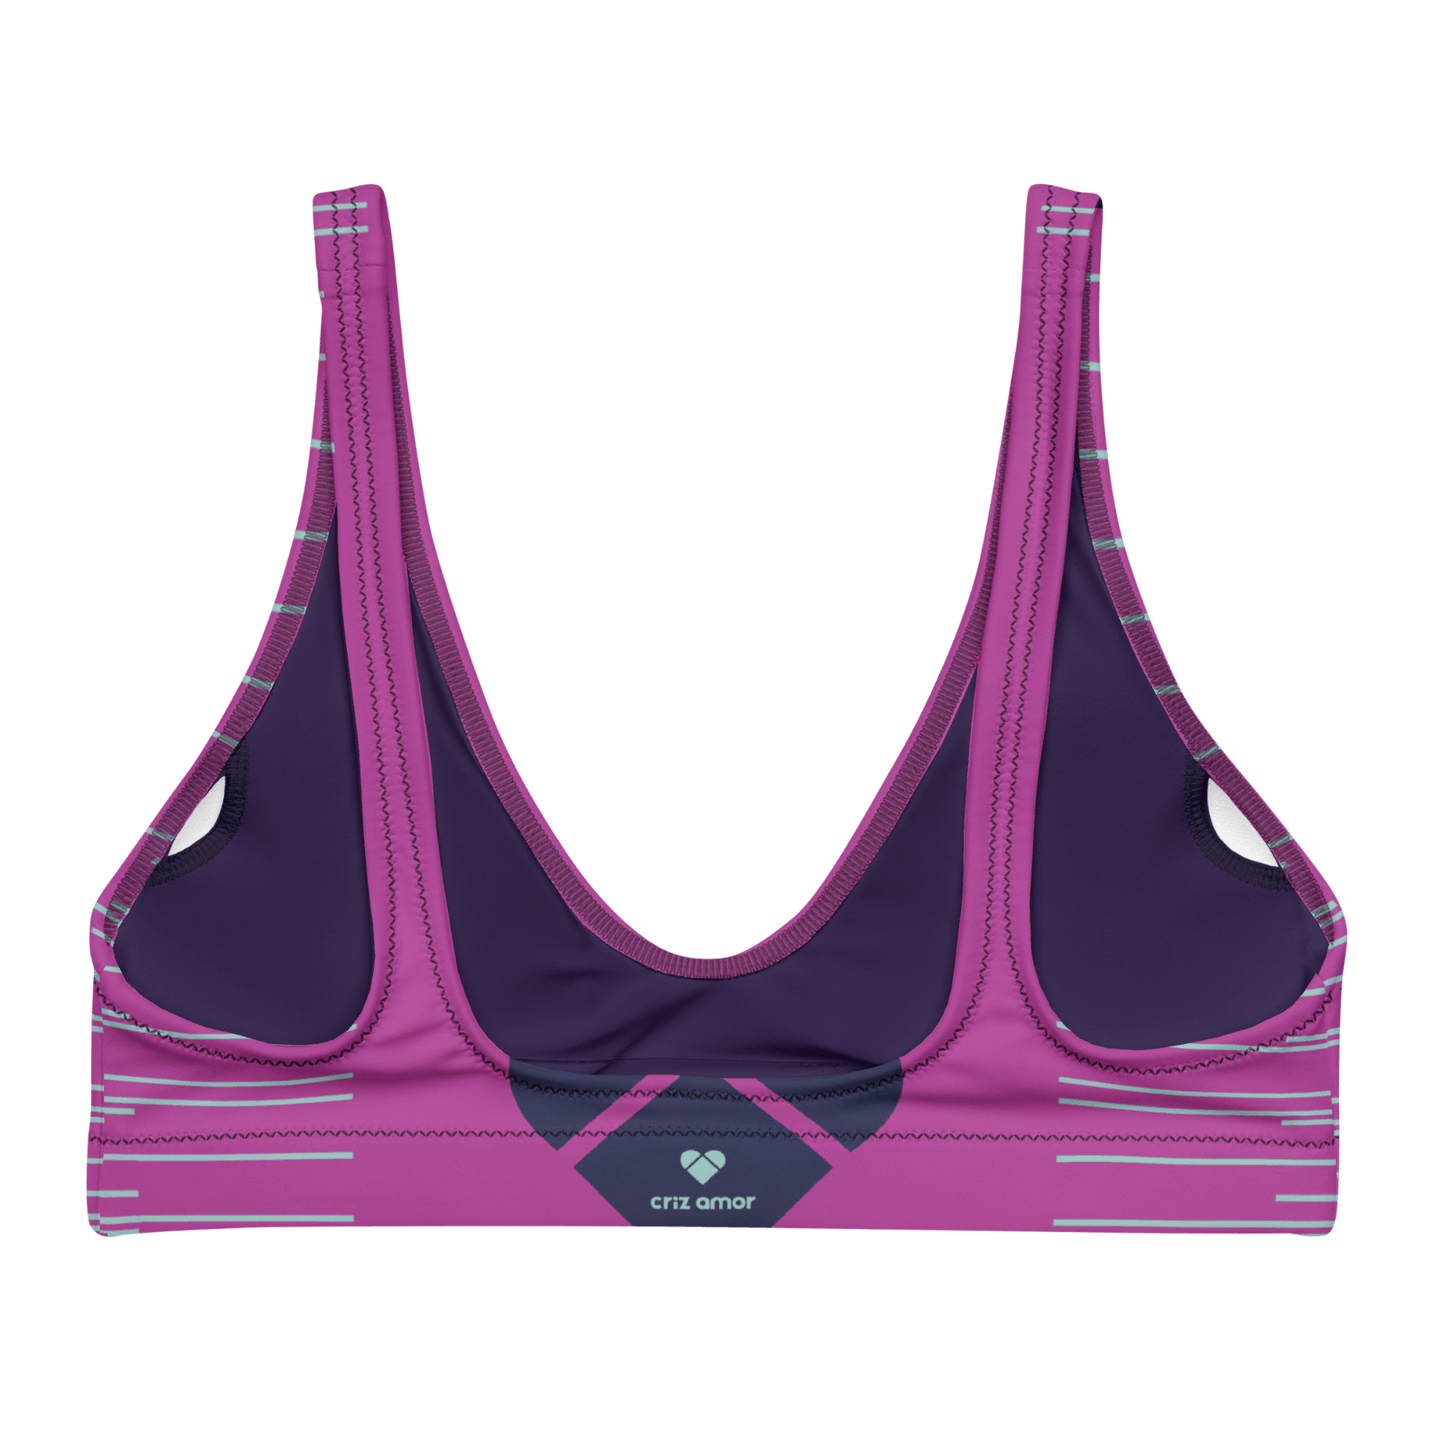 Unique Design: Fucsia Pink Dual Bikini Top from CRiZ AMOR's Collection